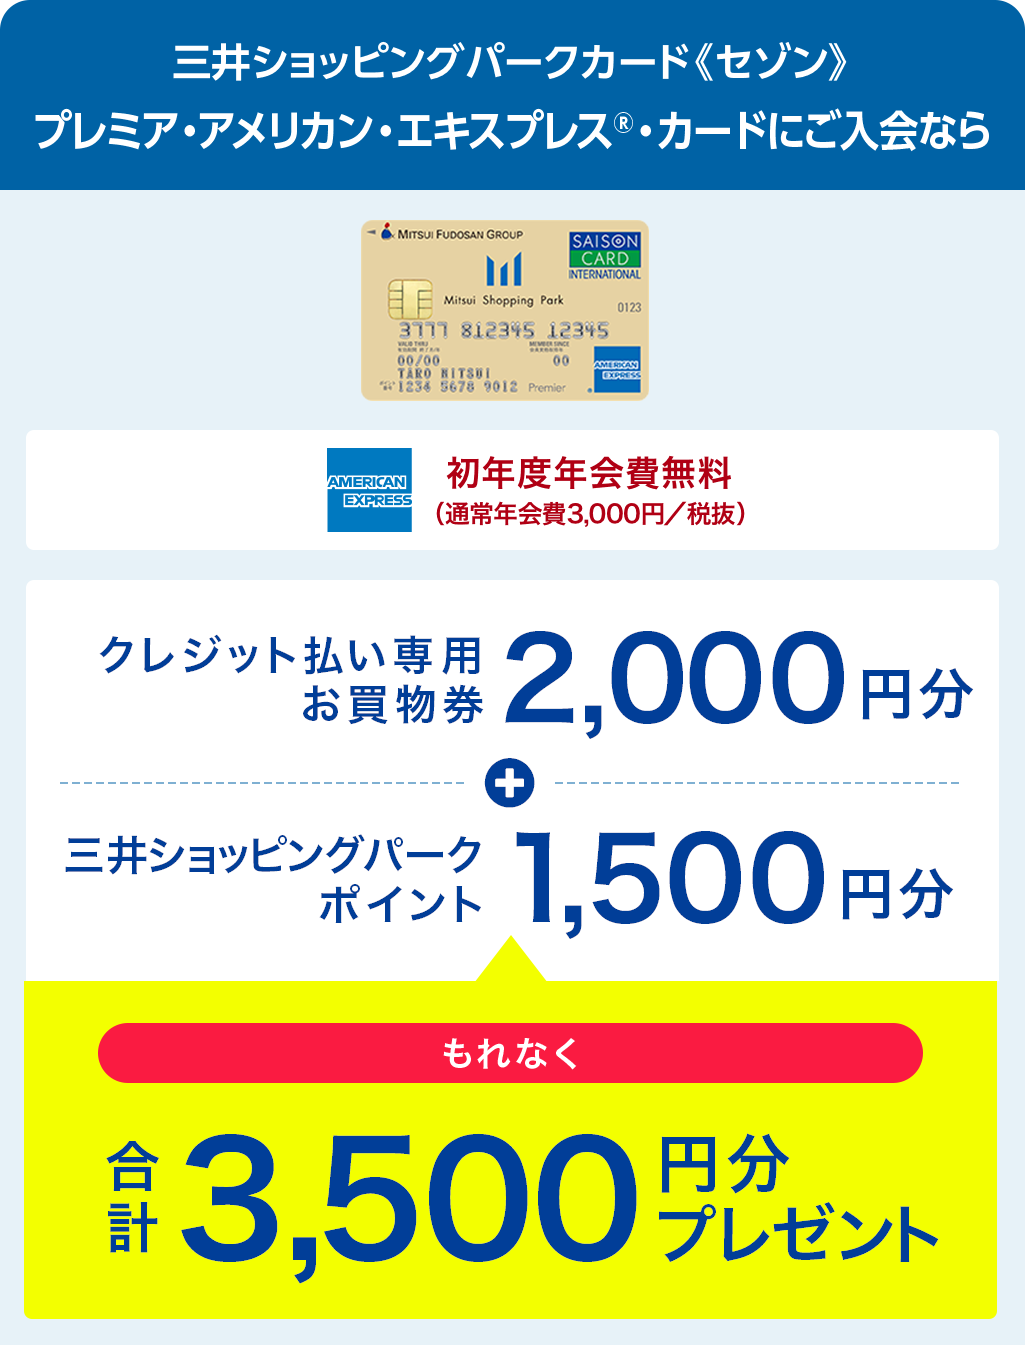 三井ショッピングパークカード《セゾン》プレミア・アメリカン・エキスプレス®・カードにご入会なら